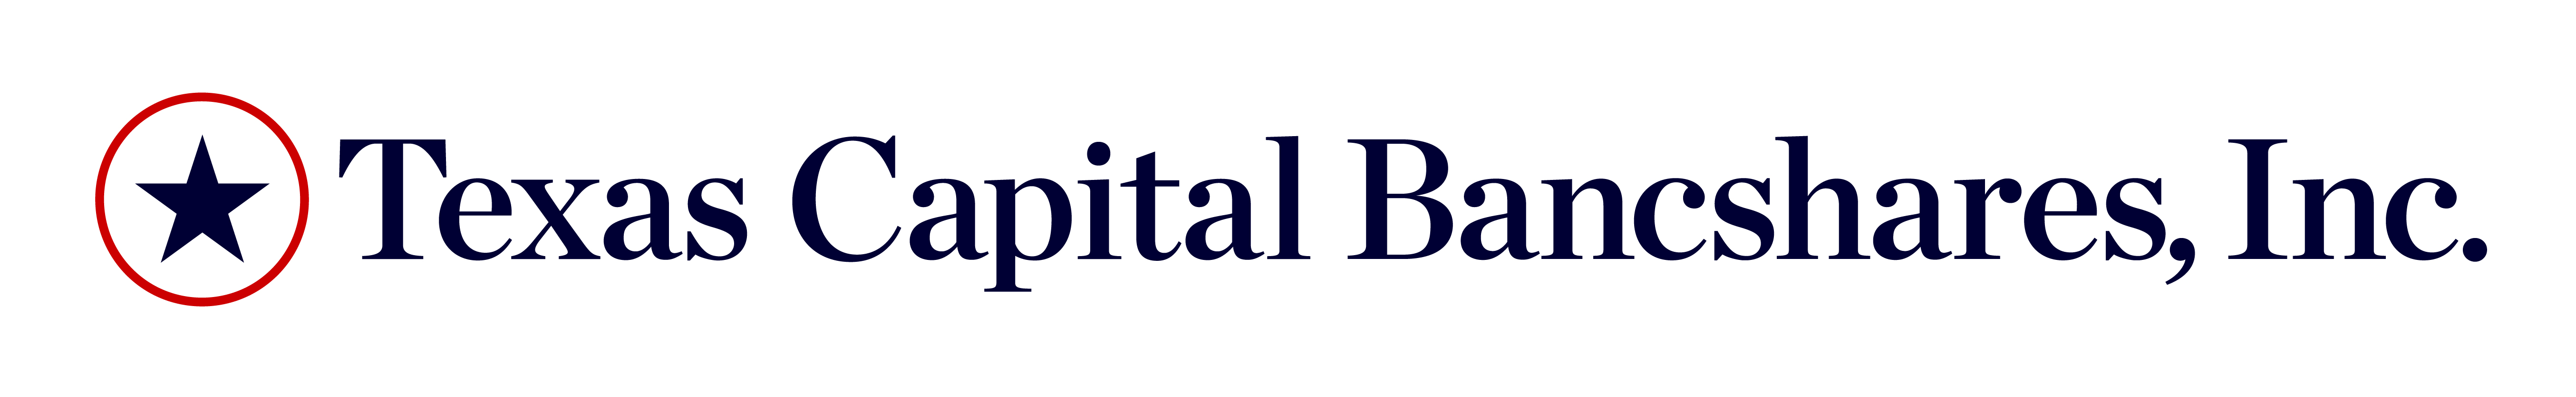 Texas Capital Bancshares, Inc. Announces Quarterly Dividend